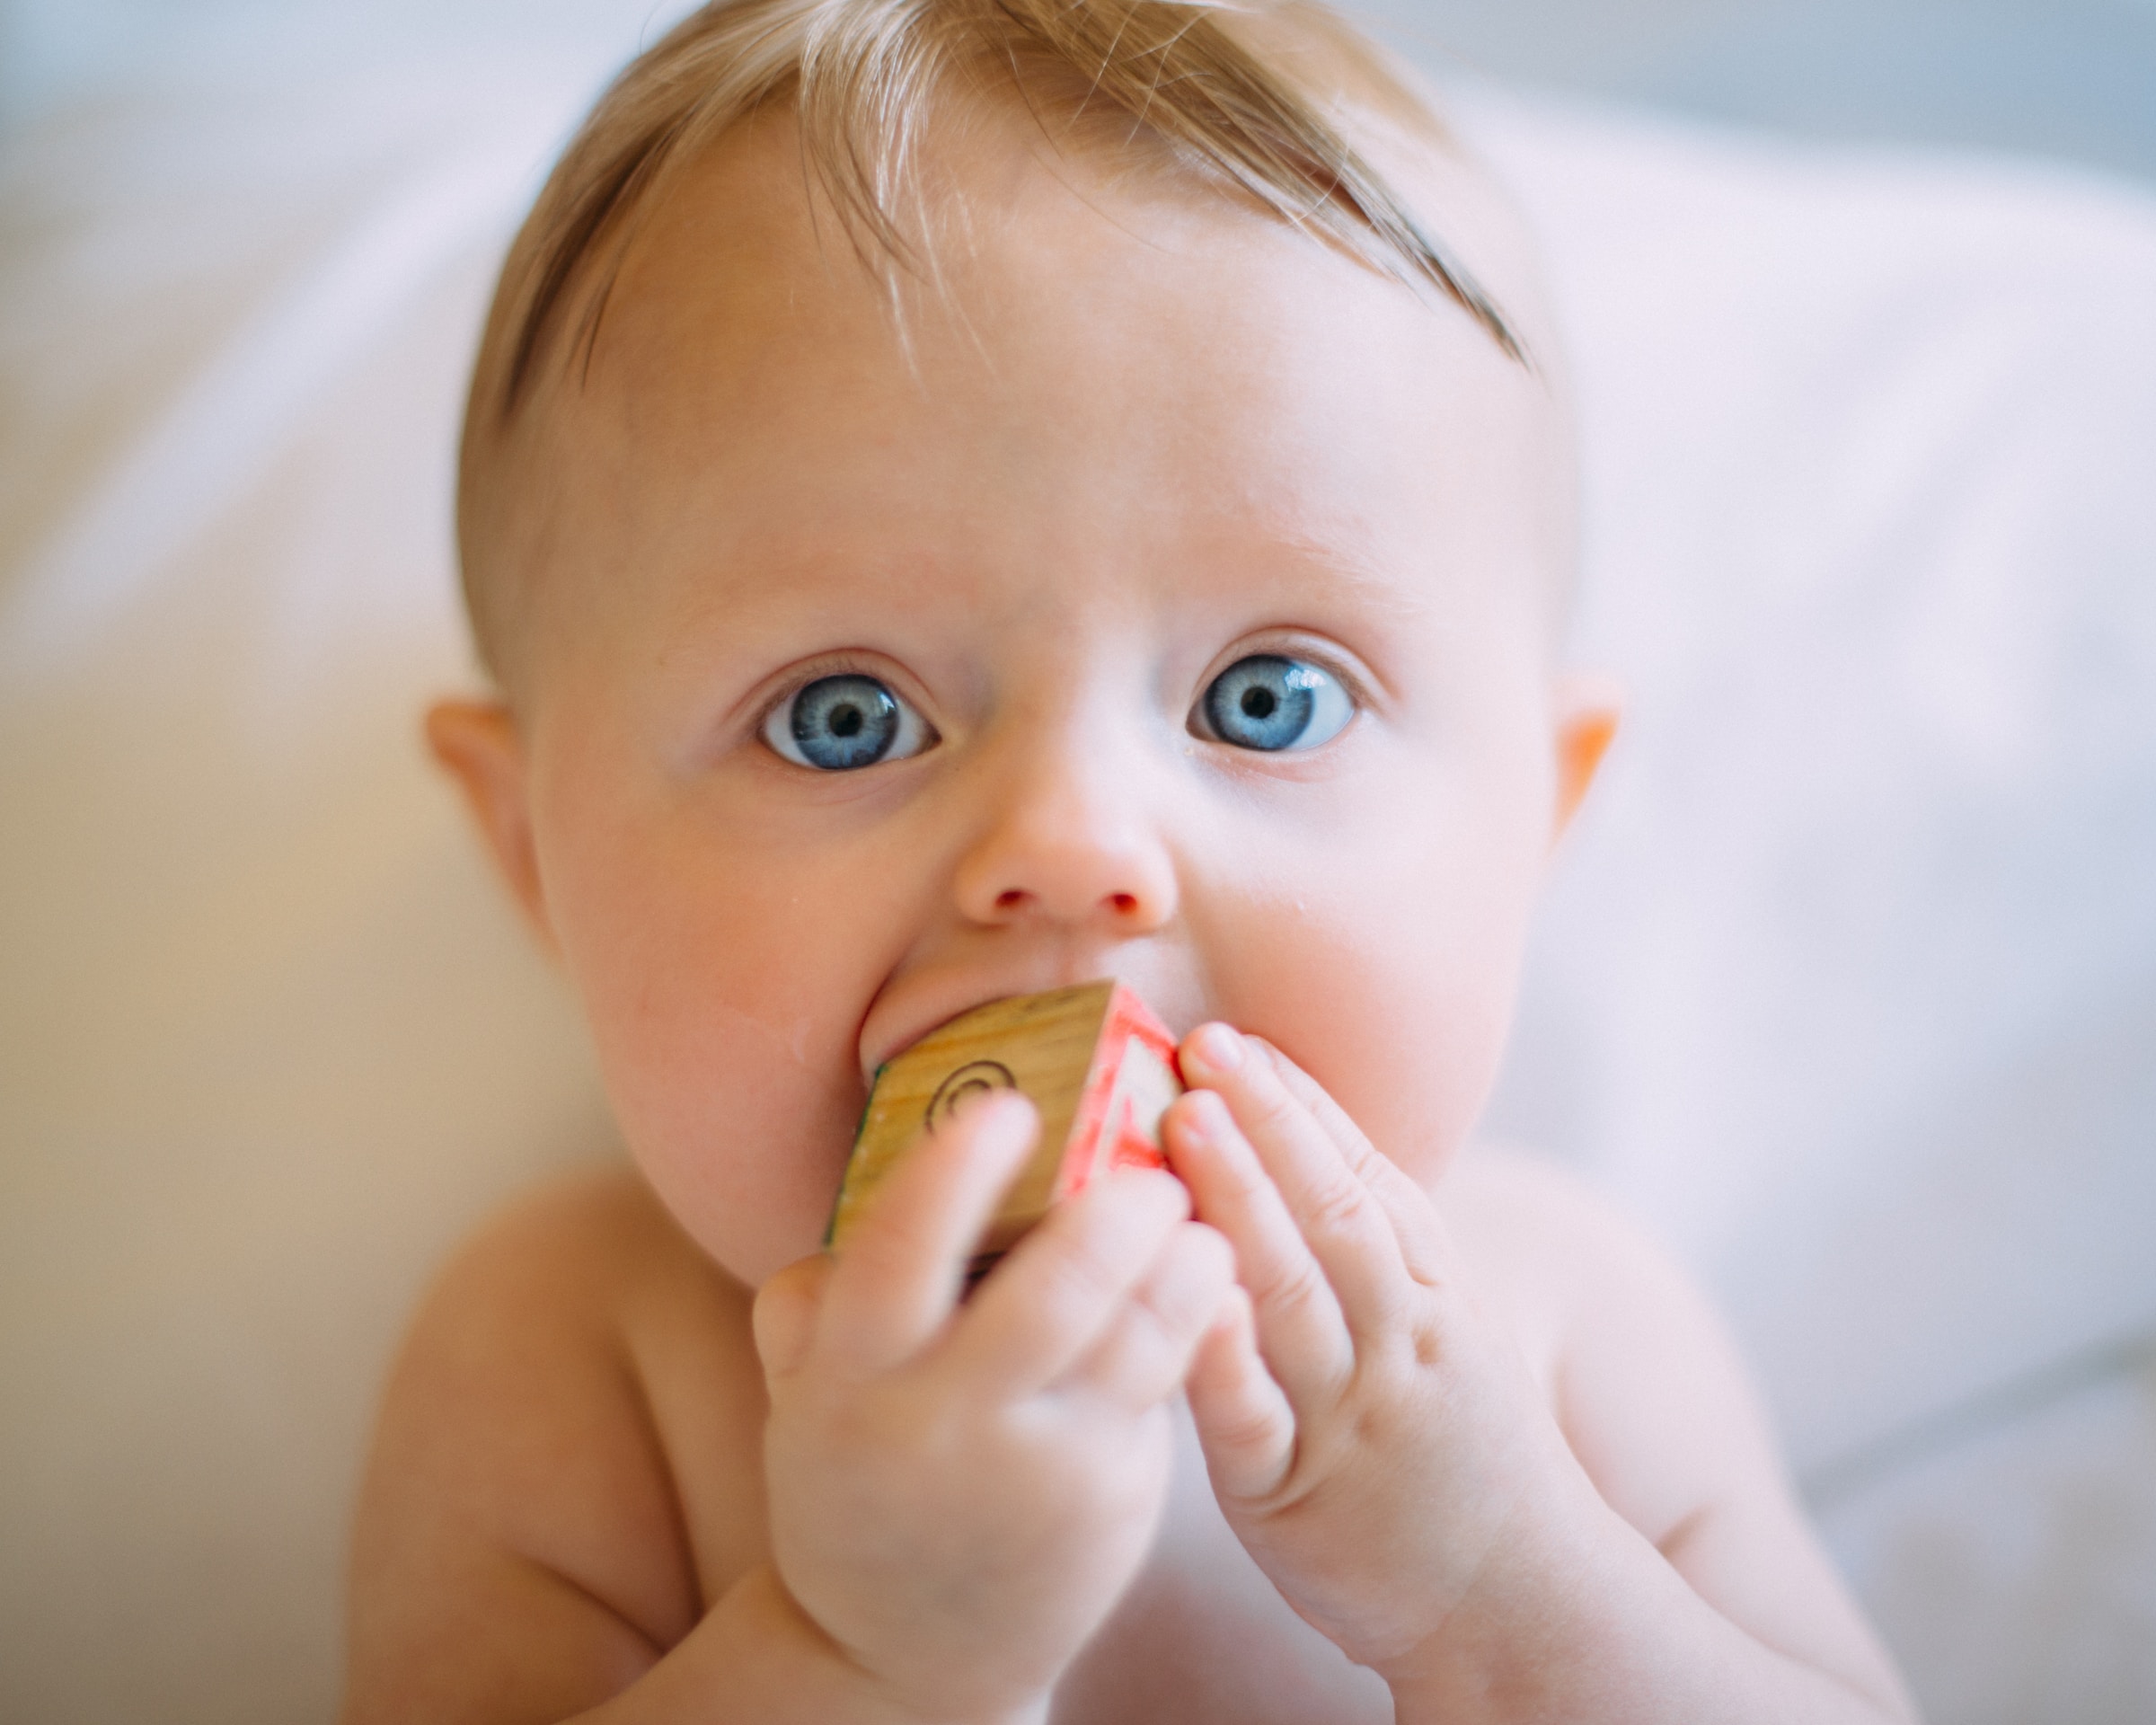 Baby mit blauen Augen. | Quelle: Unsplash